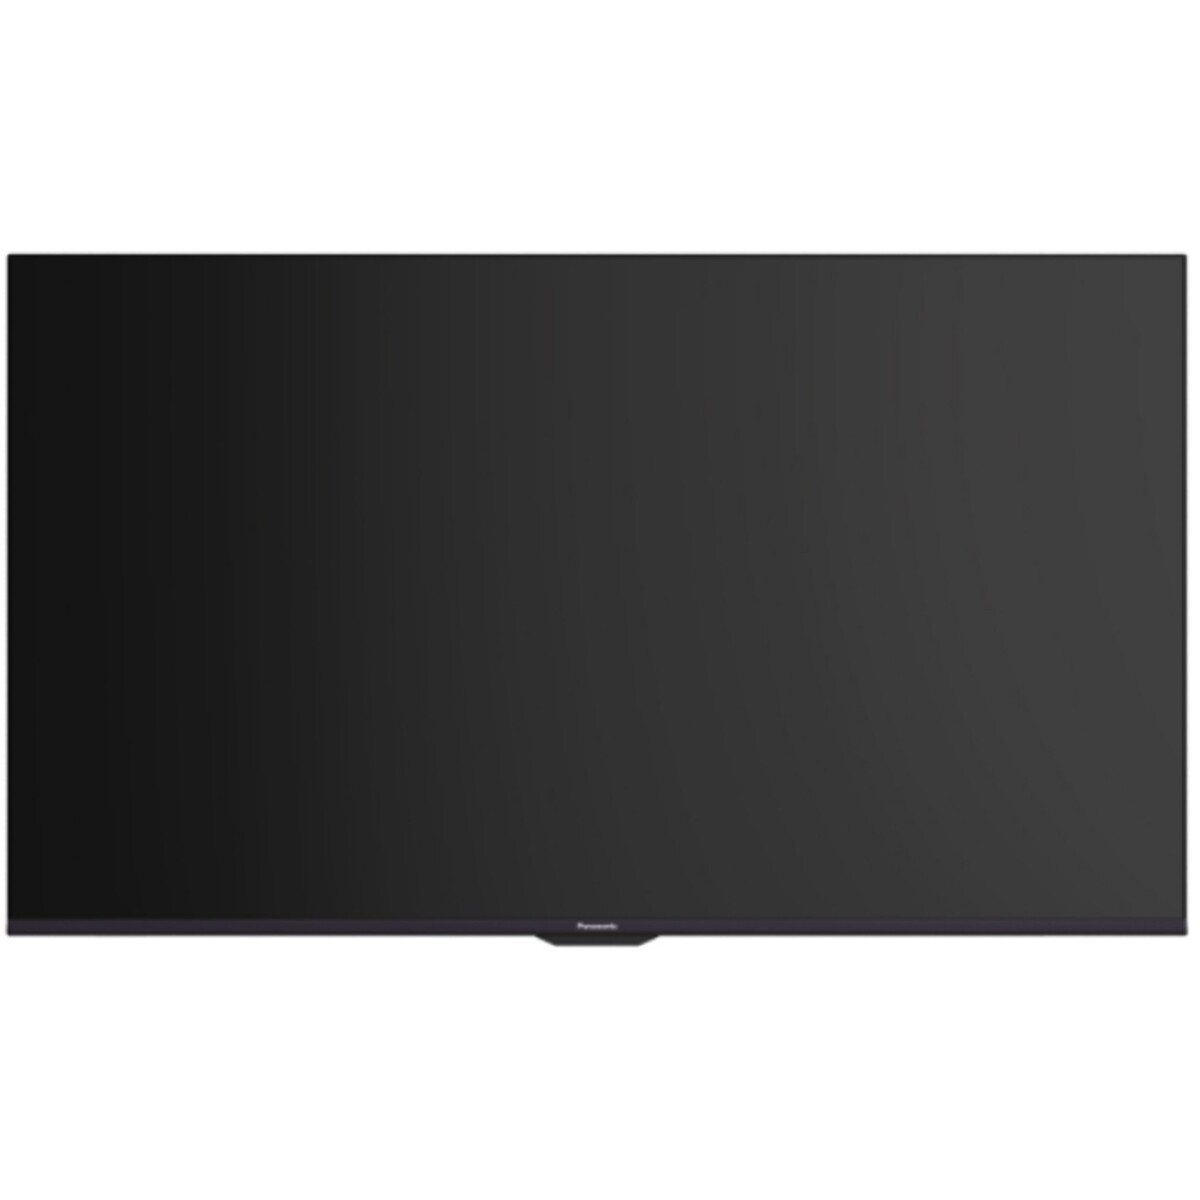 Panasonic 4K Ultra HD Smart LED TV TH-43LX750DX 43"